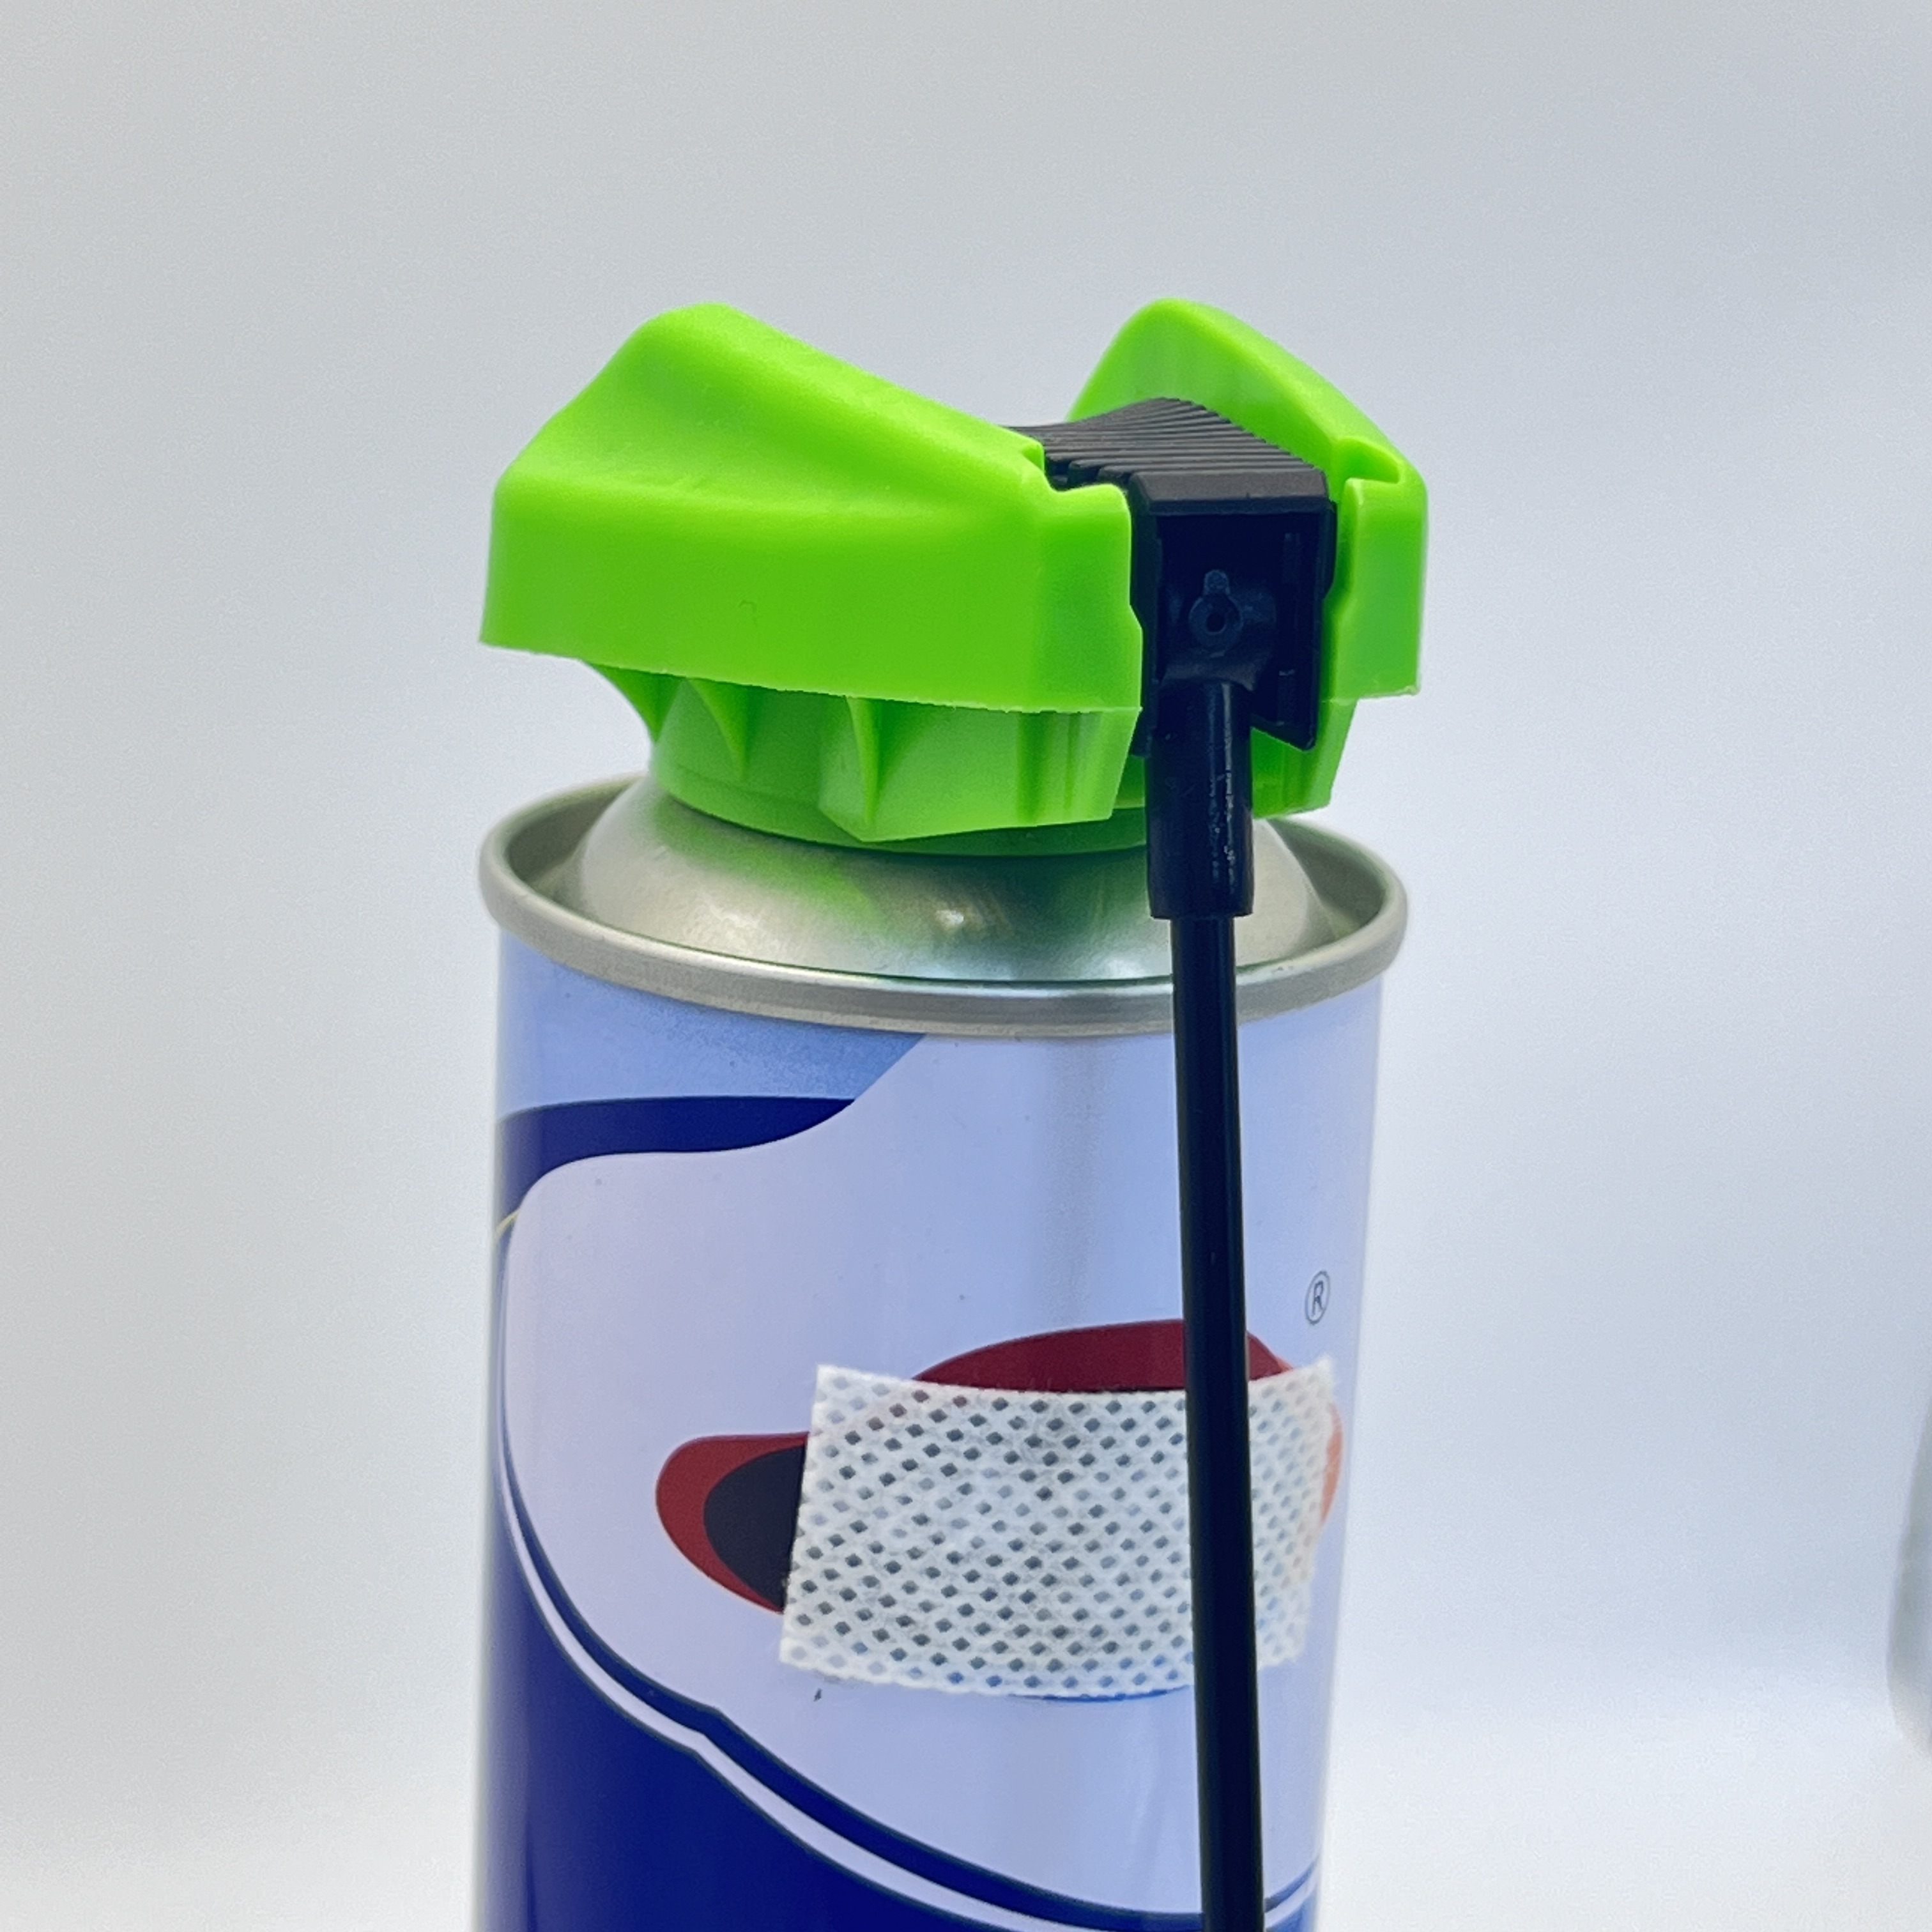 Универсальный триггерный крышка с трубкой - удобный дозирующий раствор для жидкостей и химикатов